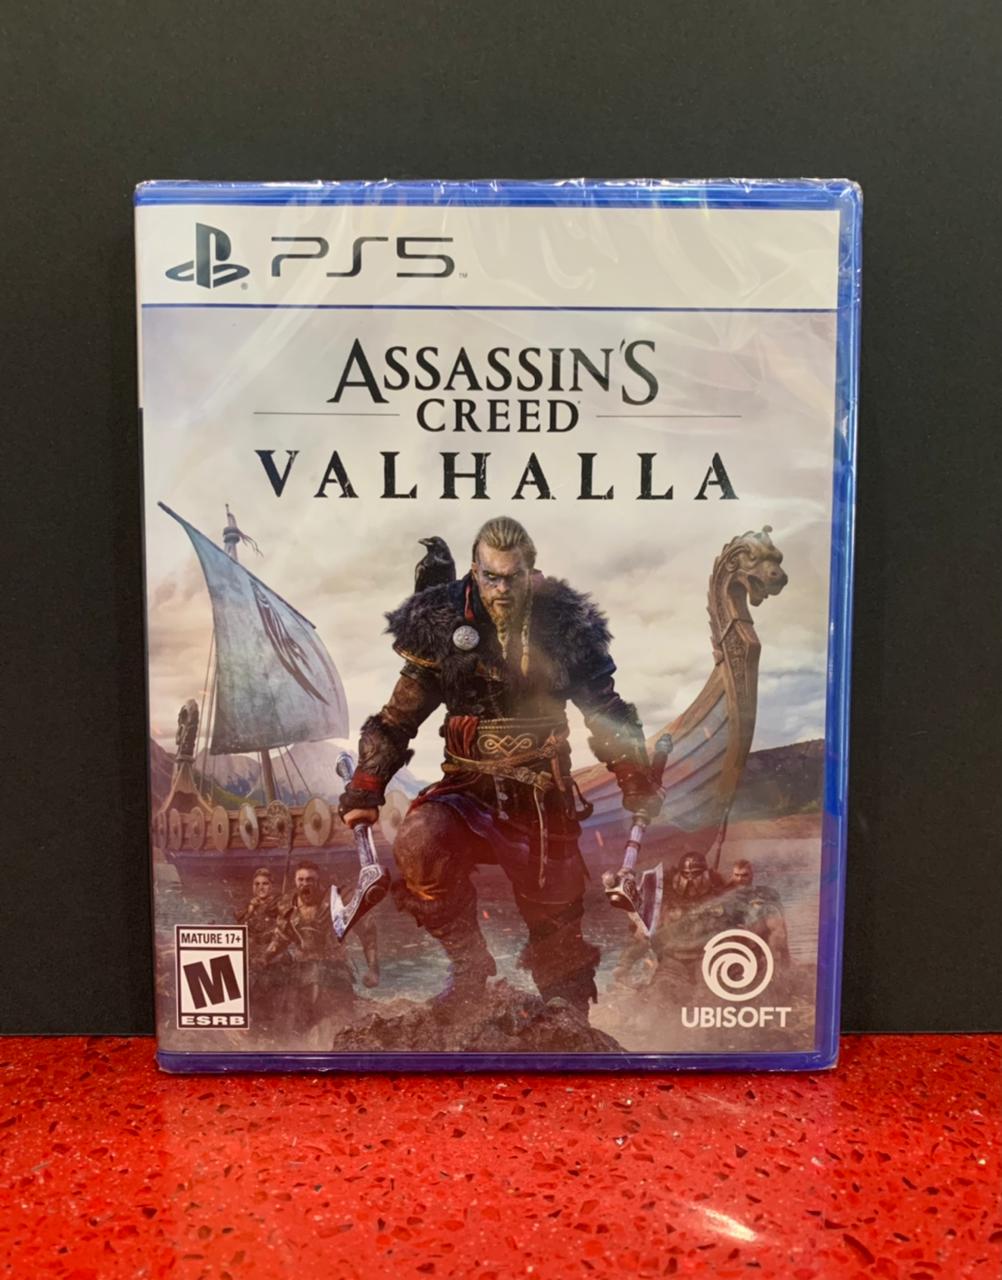 https://gamestation.hn/wp-content/uploads/2021/04/PS5-Assassins-Creed-Valhalla-game.jpeg